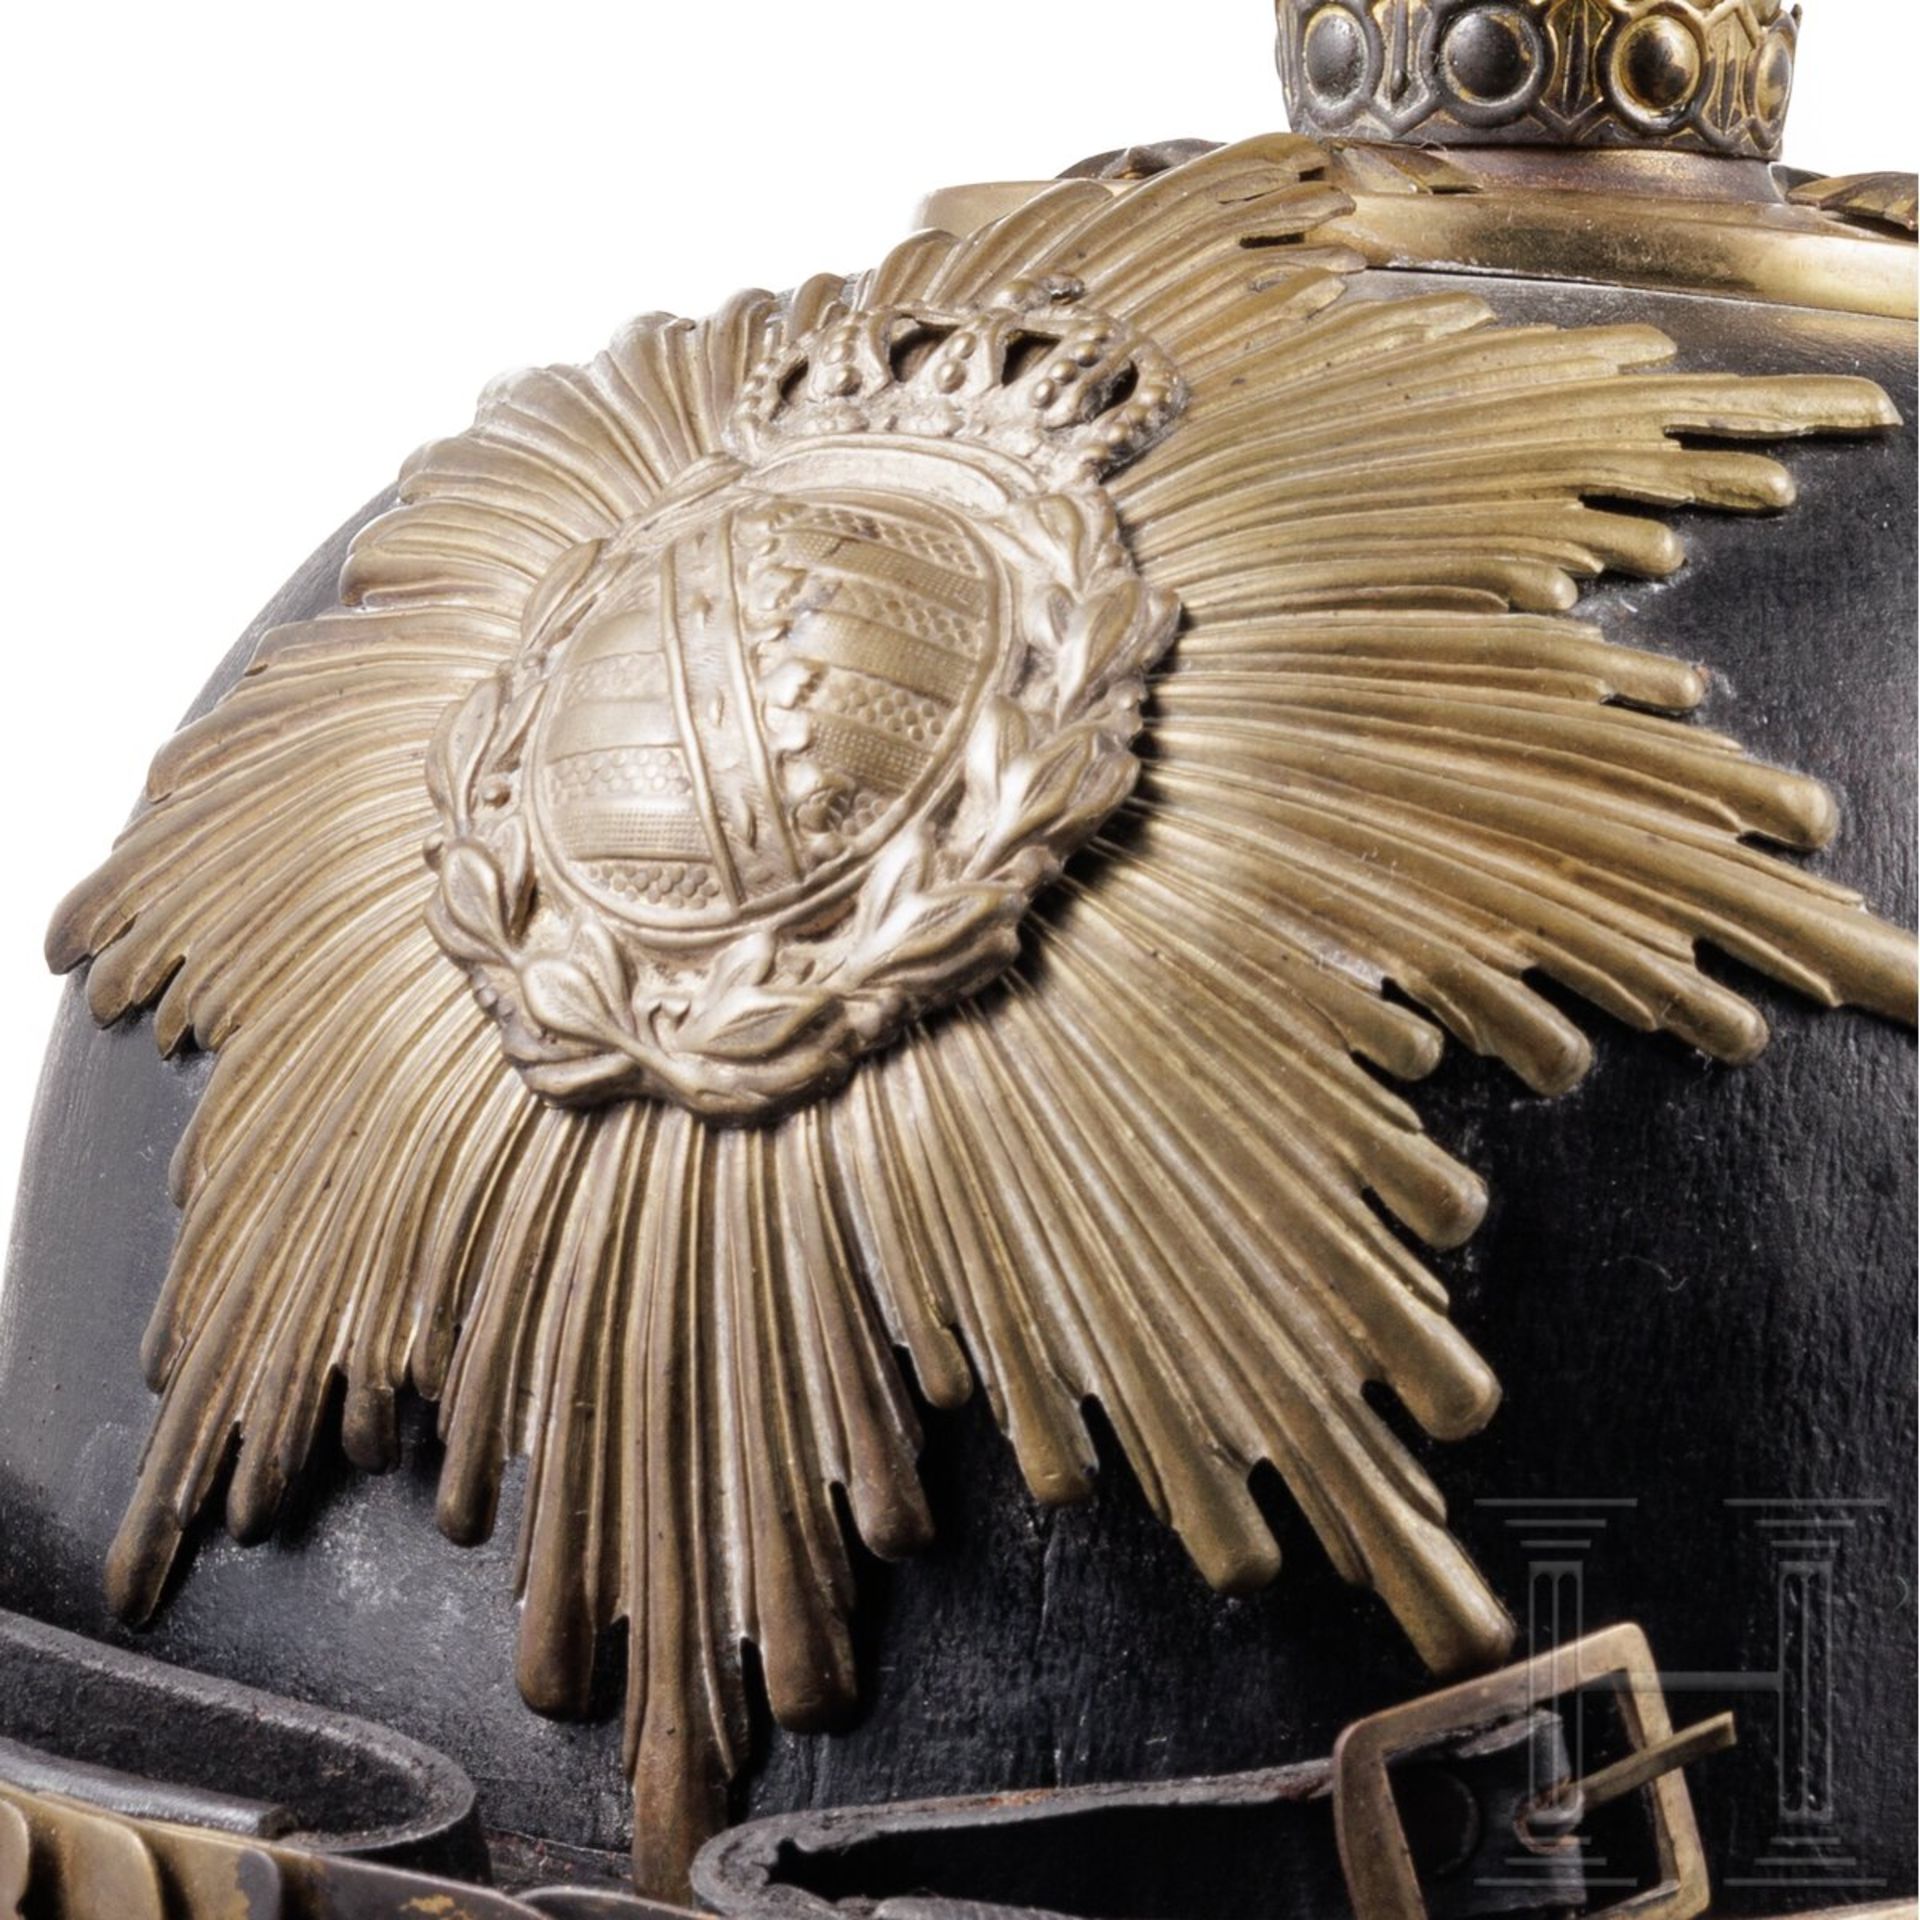 Helm für Offiziere der Infanterie, Sachsen, Trageweise um 1900 - Image 5 of 5